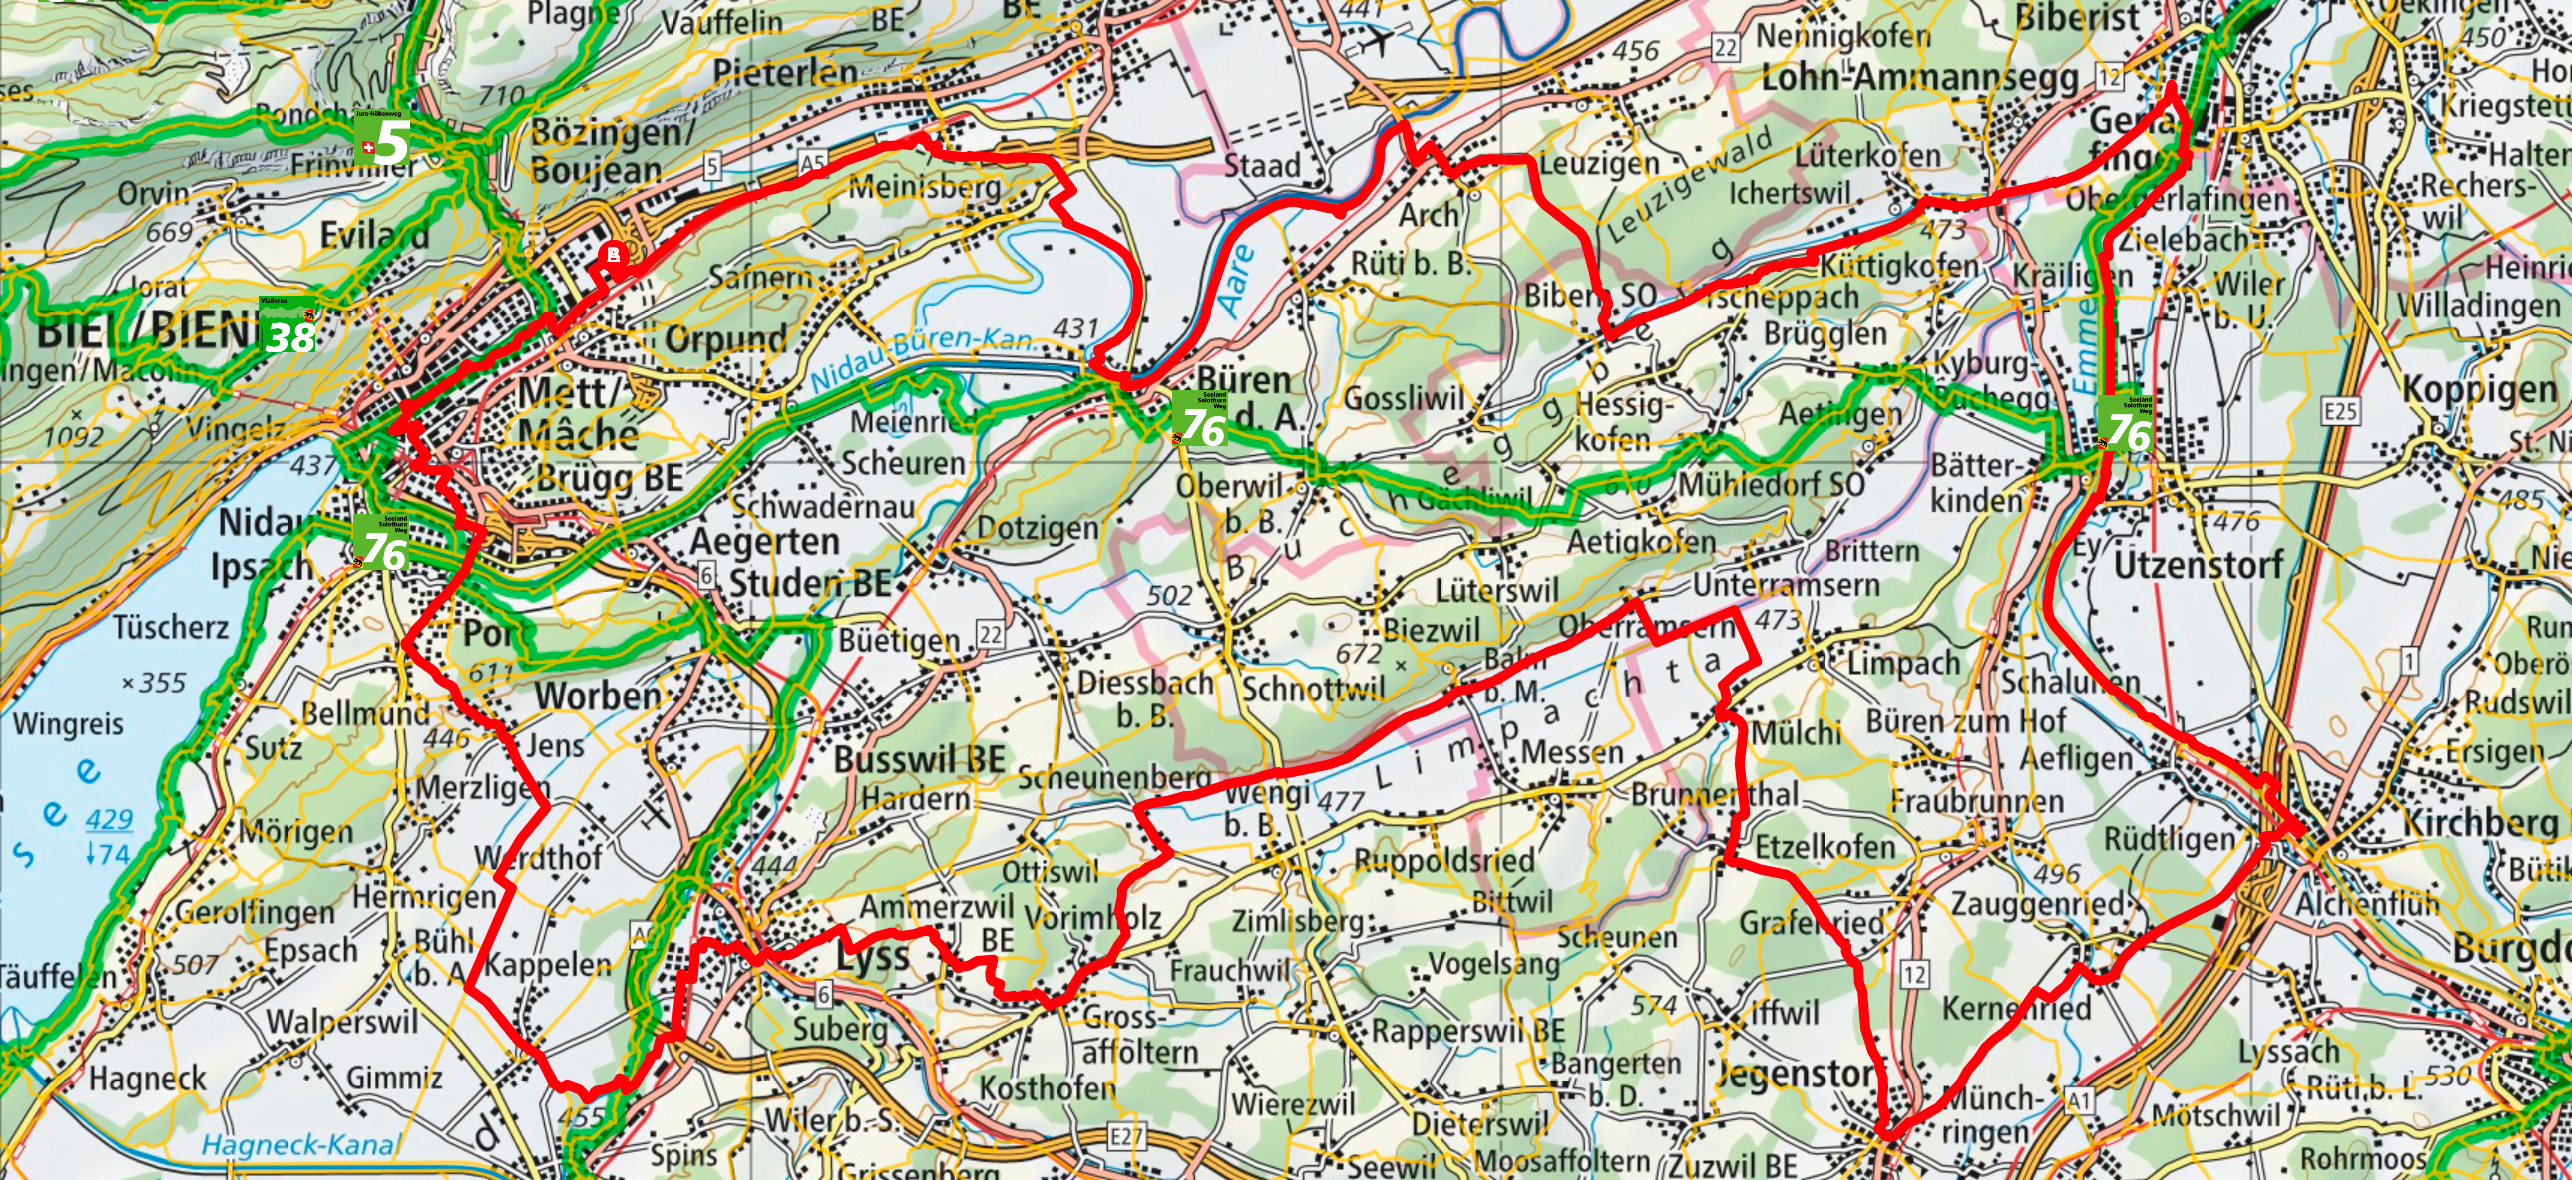 Plan du parcours 100km de Bienne